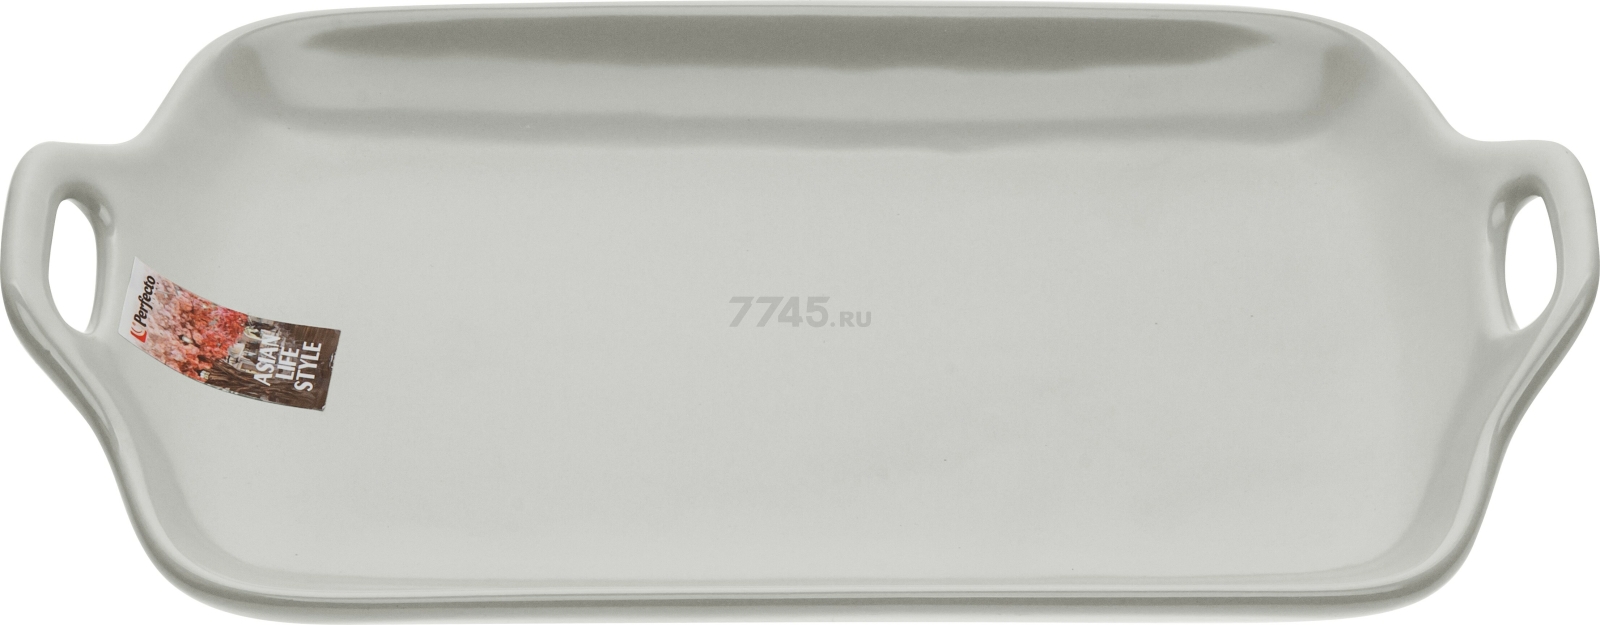 Блюдо керамическое прямоугольное PERFECTO LINEA Asian 29х17х4,5 см серый (17-102903)